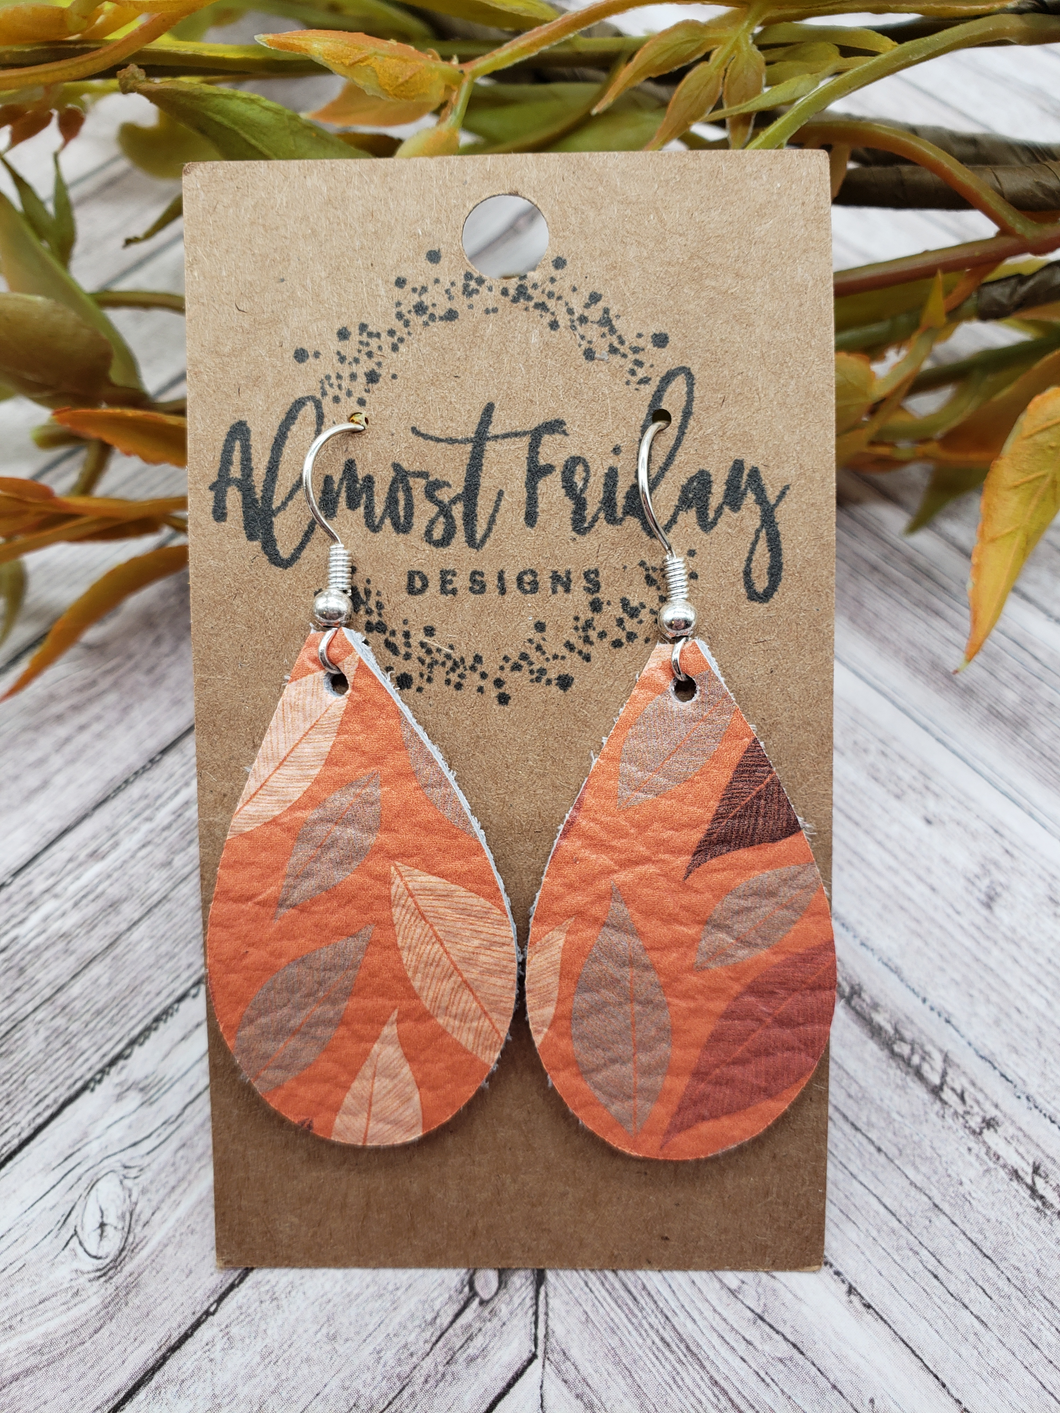 Genuine Leather Earrings - Teardrop Earrings - Orange Leather - Magnolia Leaves - Fall Earrings